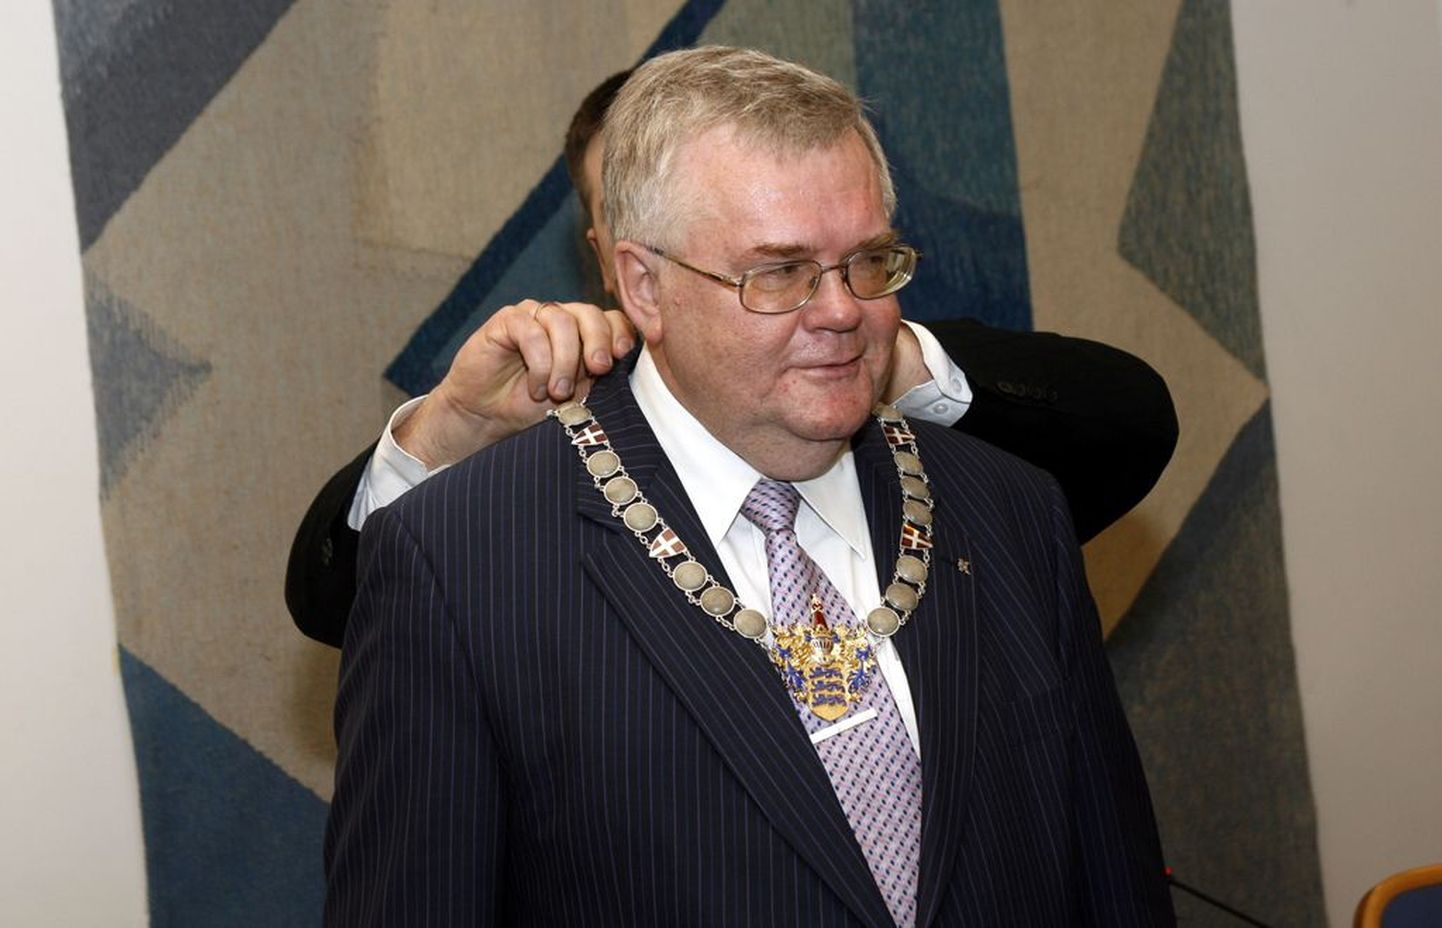 Tallinna linnapea Edgar Savisaar 5. aprillil 2007 linnapea ametketti vastu võtmas